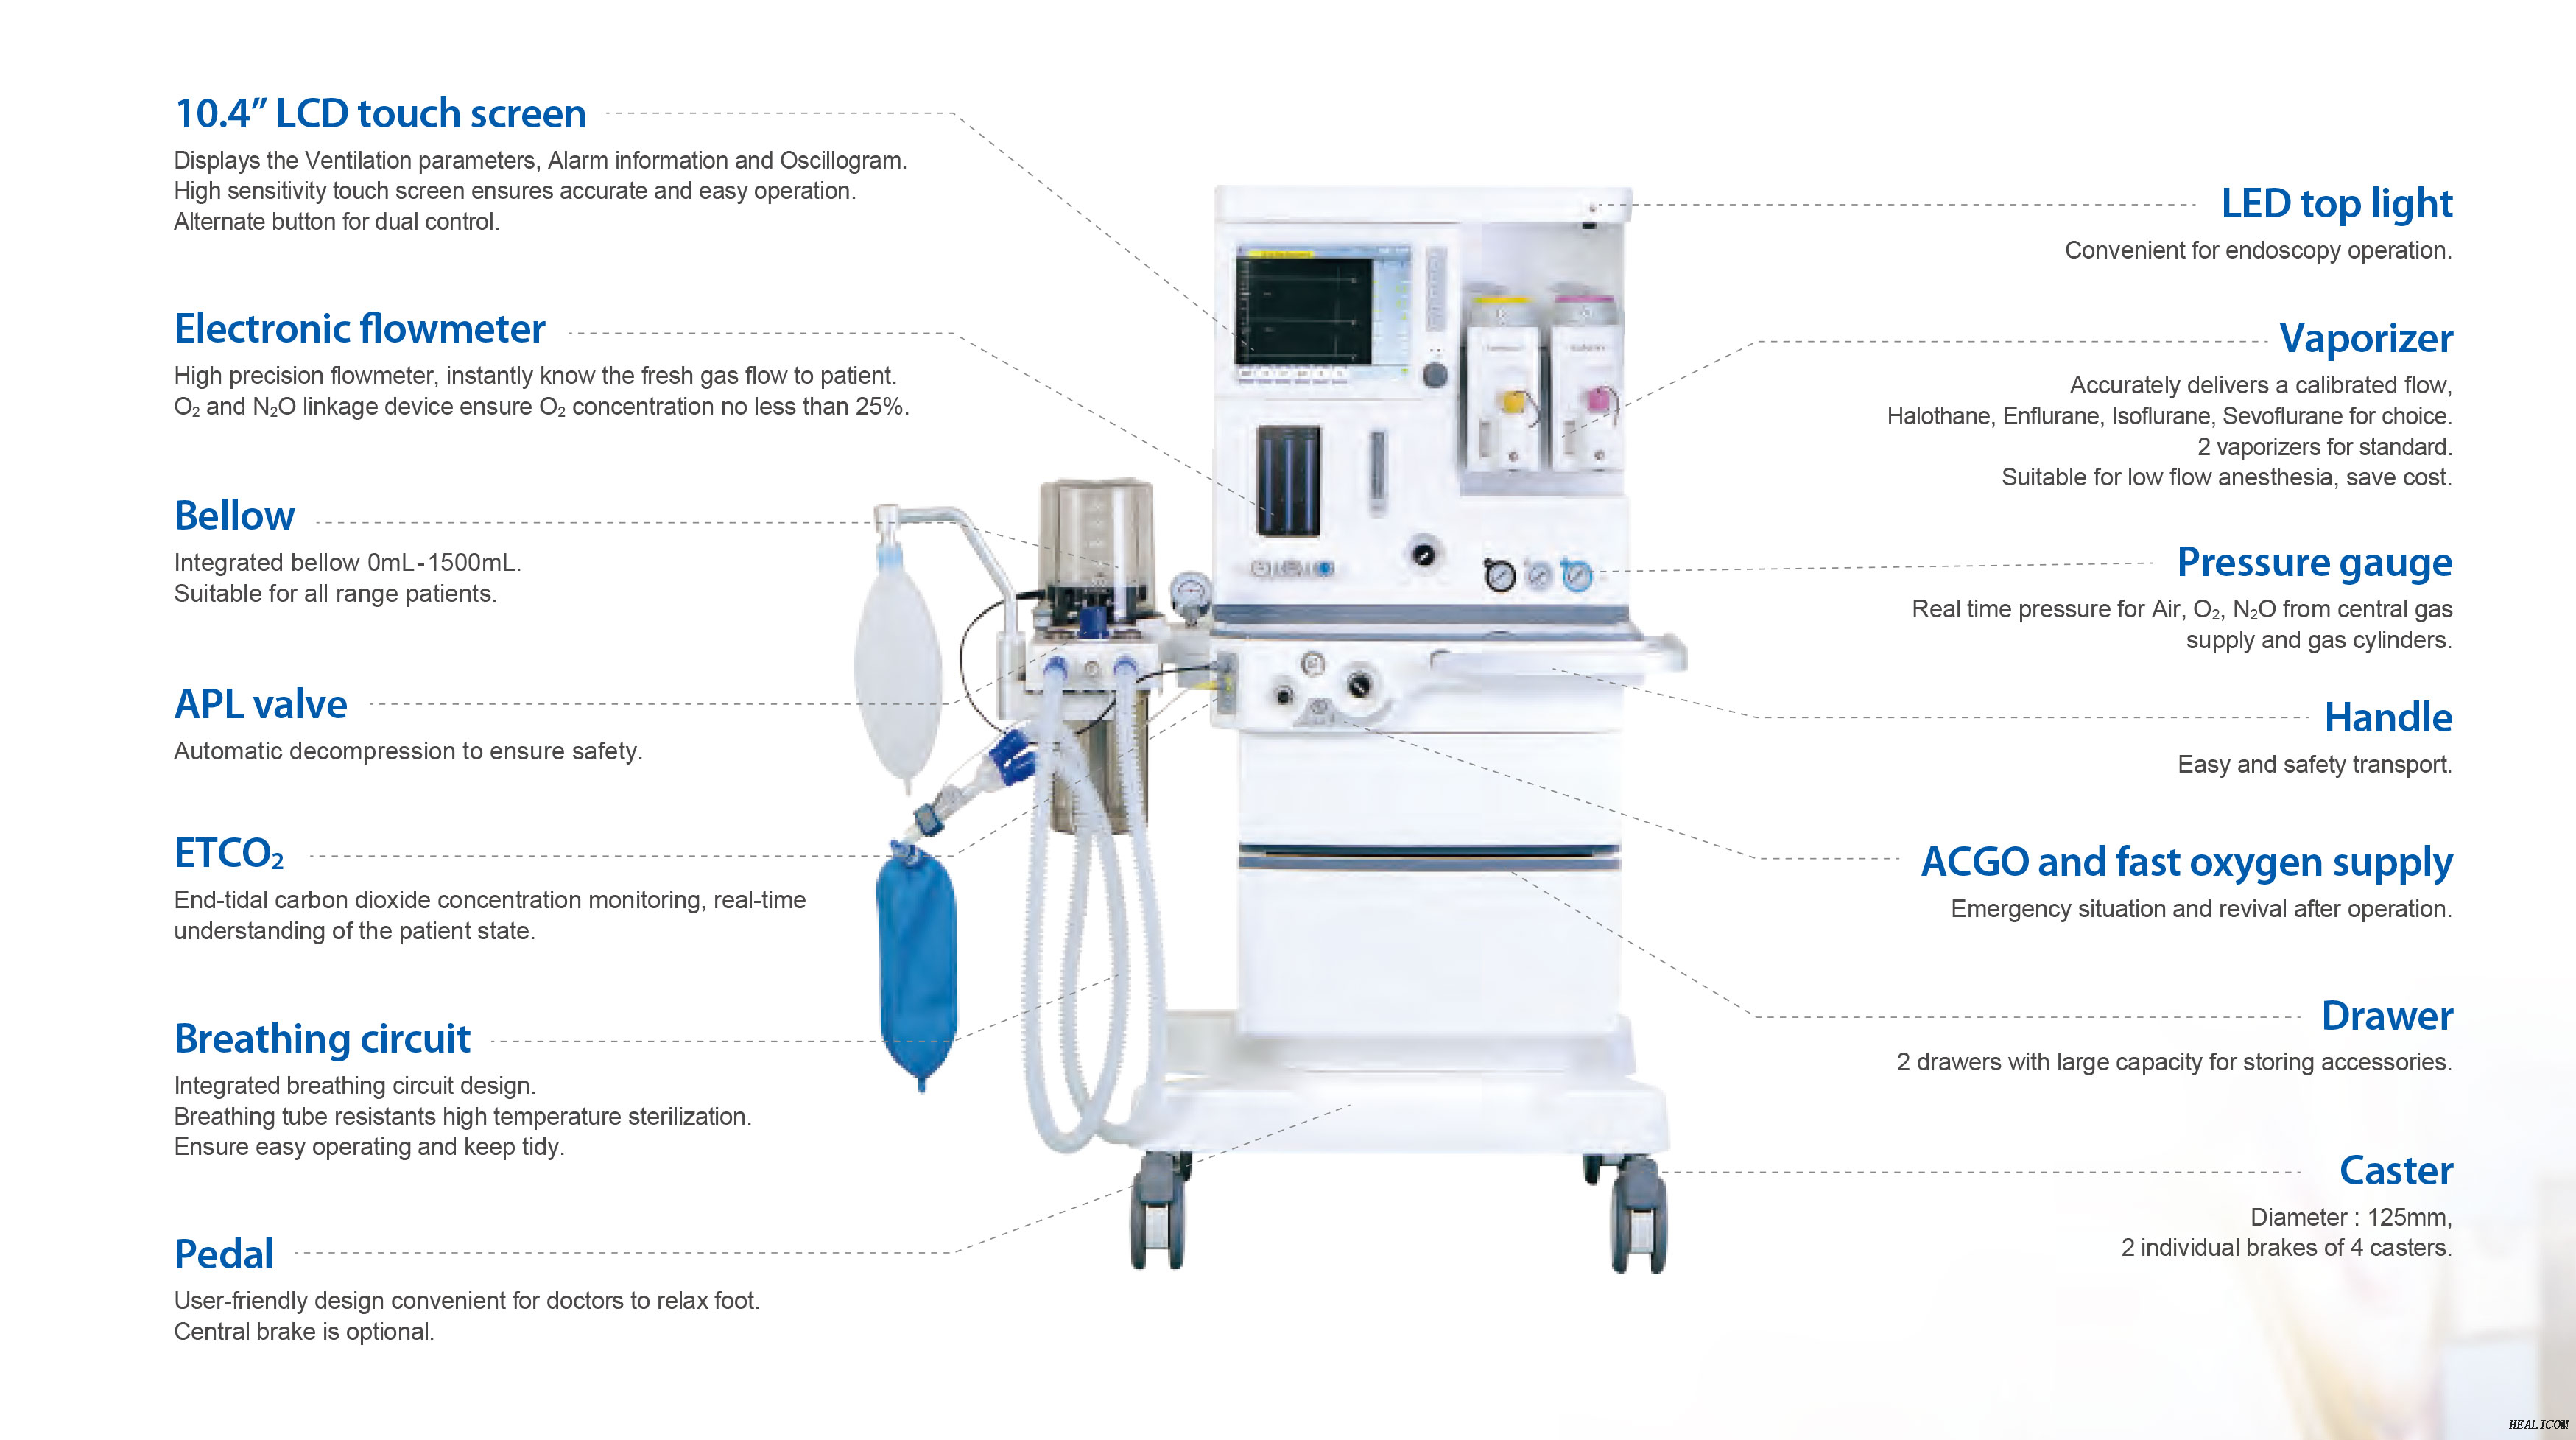 Vendita calda Healicom HA-6100 Plus Apparecchiatura per anestesia per pazienti con sistemi di macchine per anestesia